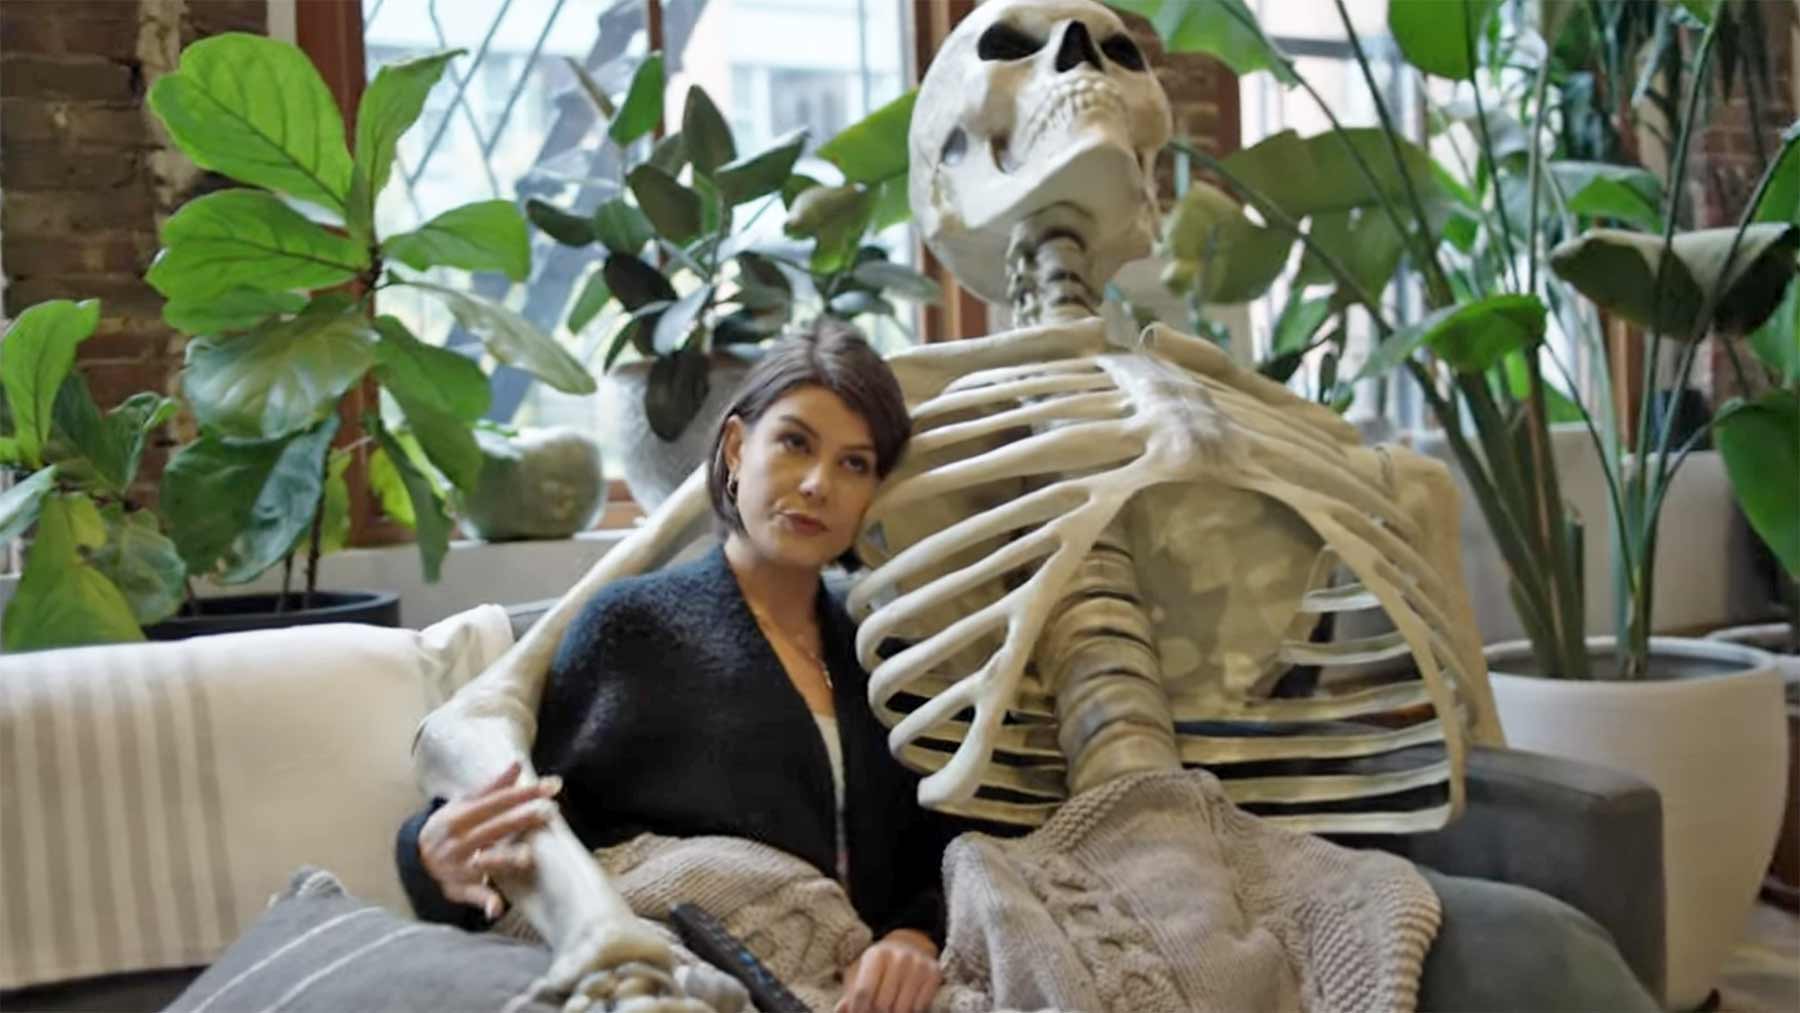 Verliebt in ein 3,5 Meter großes Deko-Skelett my-new-boyfriend-skelettliebe 